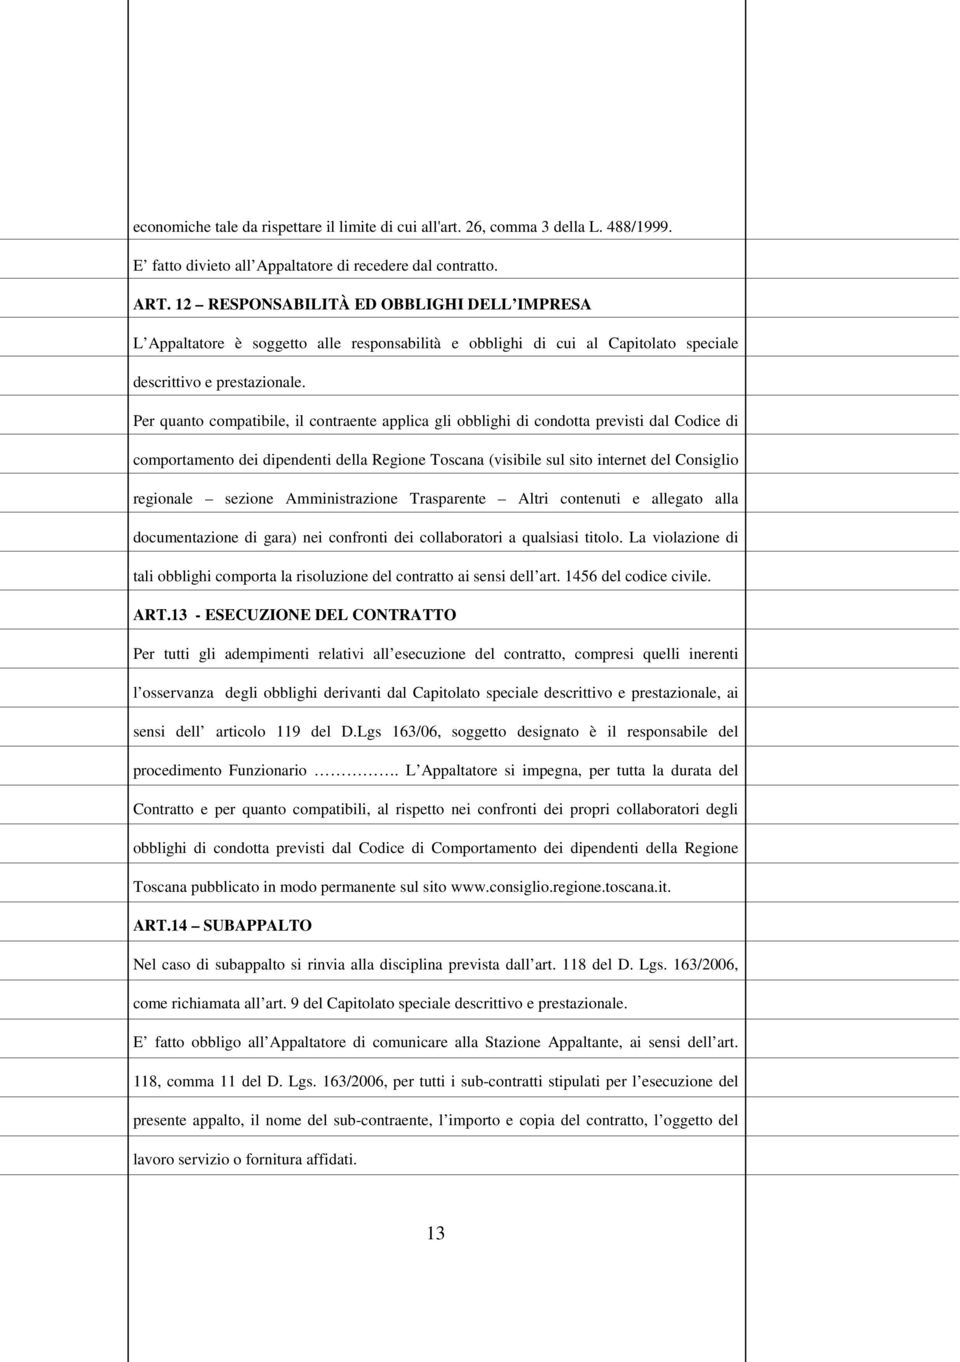 Per quanto compatibile, il contraente applica gli obblighi di condotta previsti dal Codice di comportamento dei dipendenti della Regione Toscana (visibile sul sito internet del Consiglio regionale